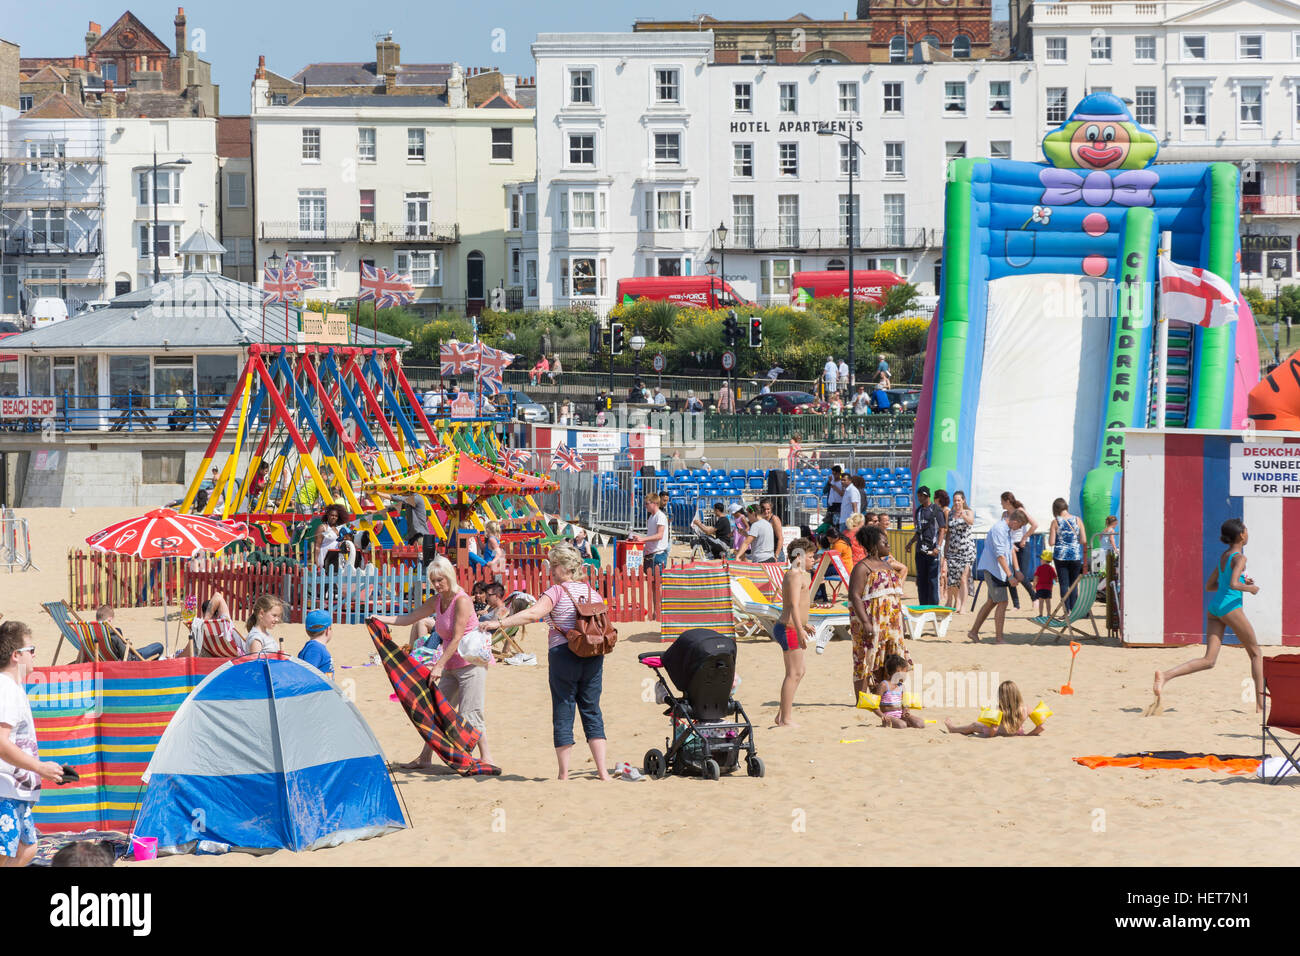 Aire de jeux pour enfants, plage de Margate, Margate, Kent, Angleterre, Royaume-Uni Banque D'Images